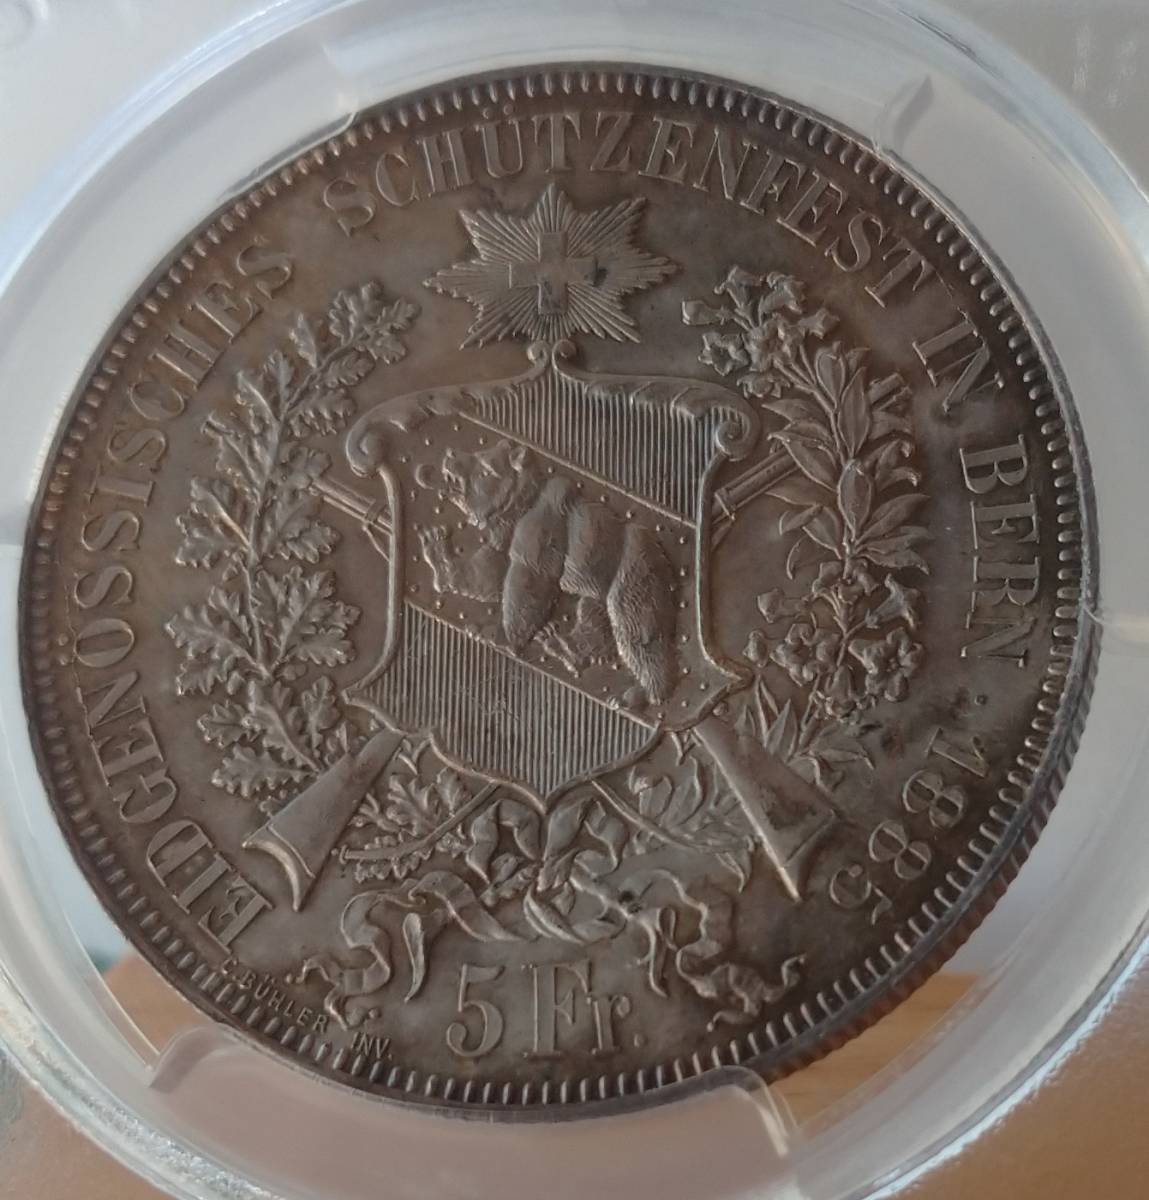 スイス近代射撃祭記念銀貨 ５Ｆ １８８５年 ベルン ＭＳ６２（ＰＣＧＳ